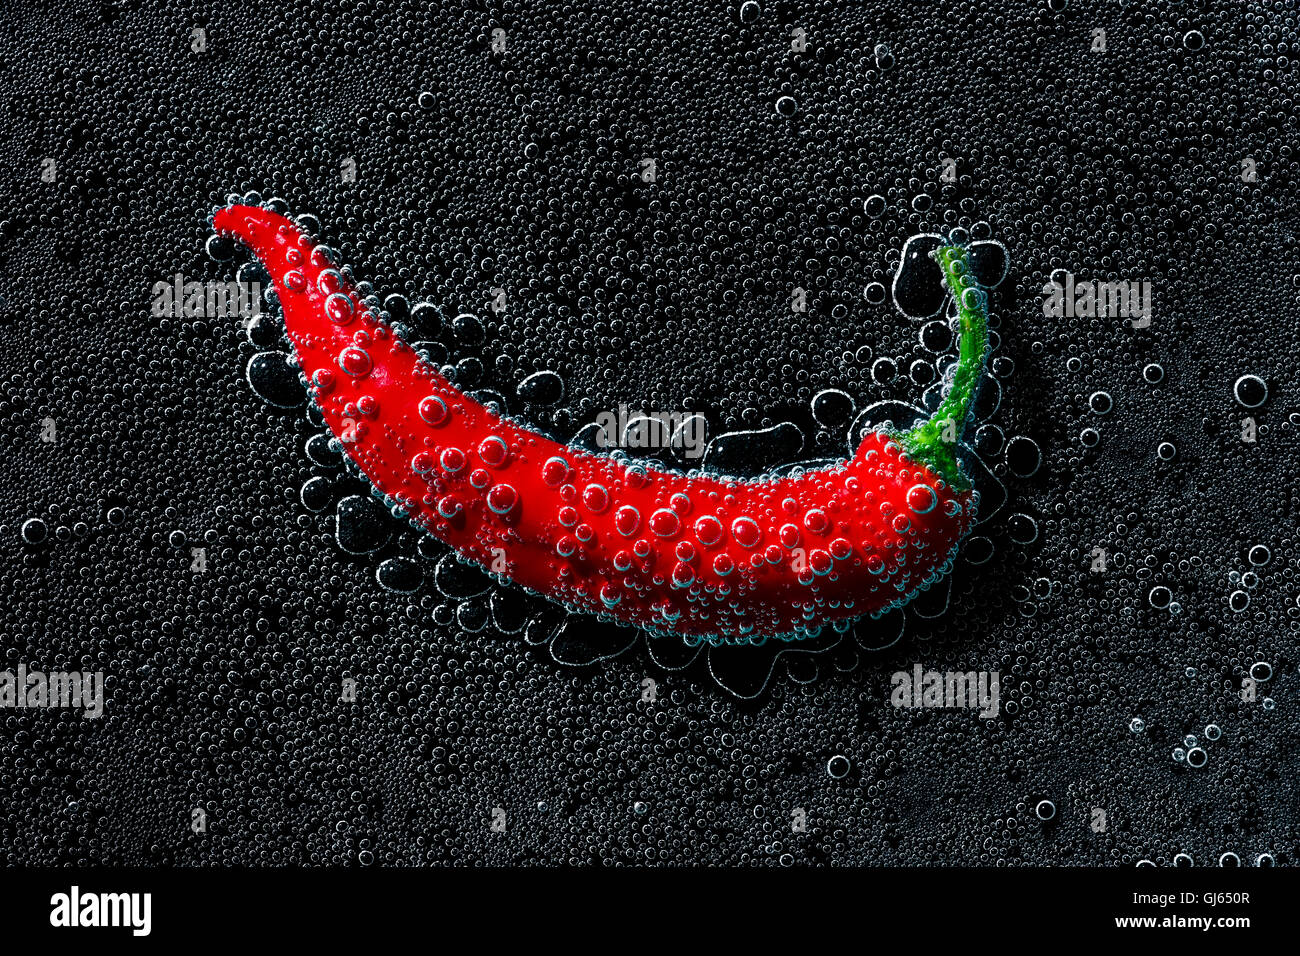 Chili Pepper dans une eau minérale, une série de photos. Close-up de l'eau gazéifiée sur fond noir Banque D'Images